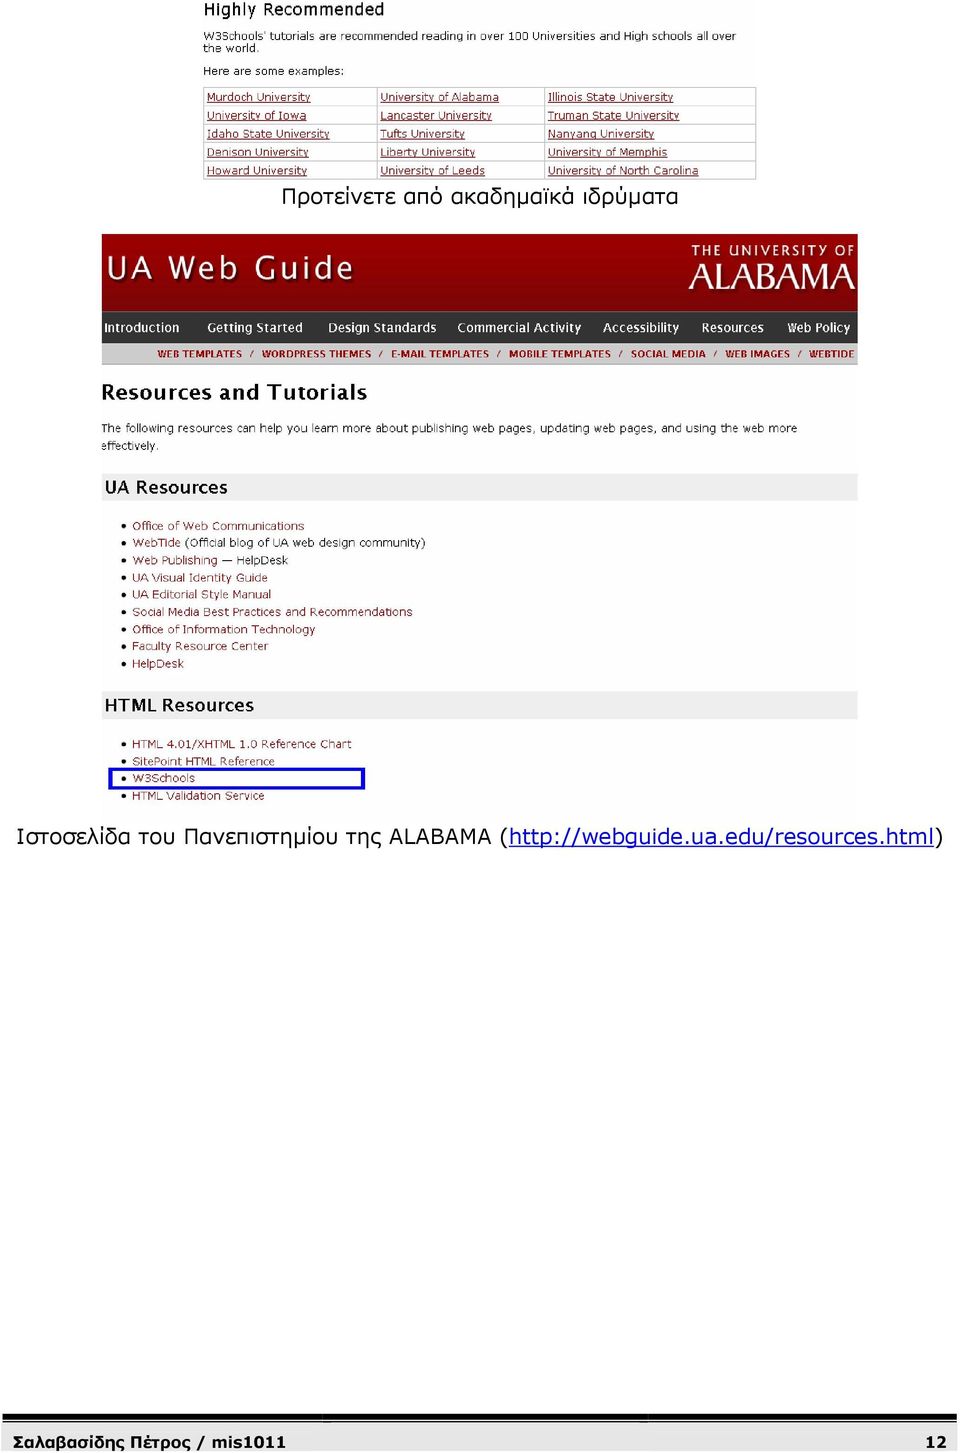 ALABAMA (http://webguide.ua.